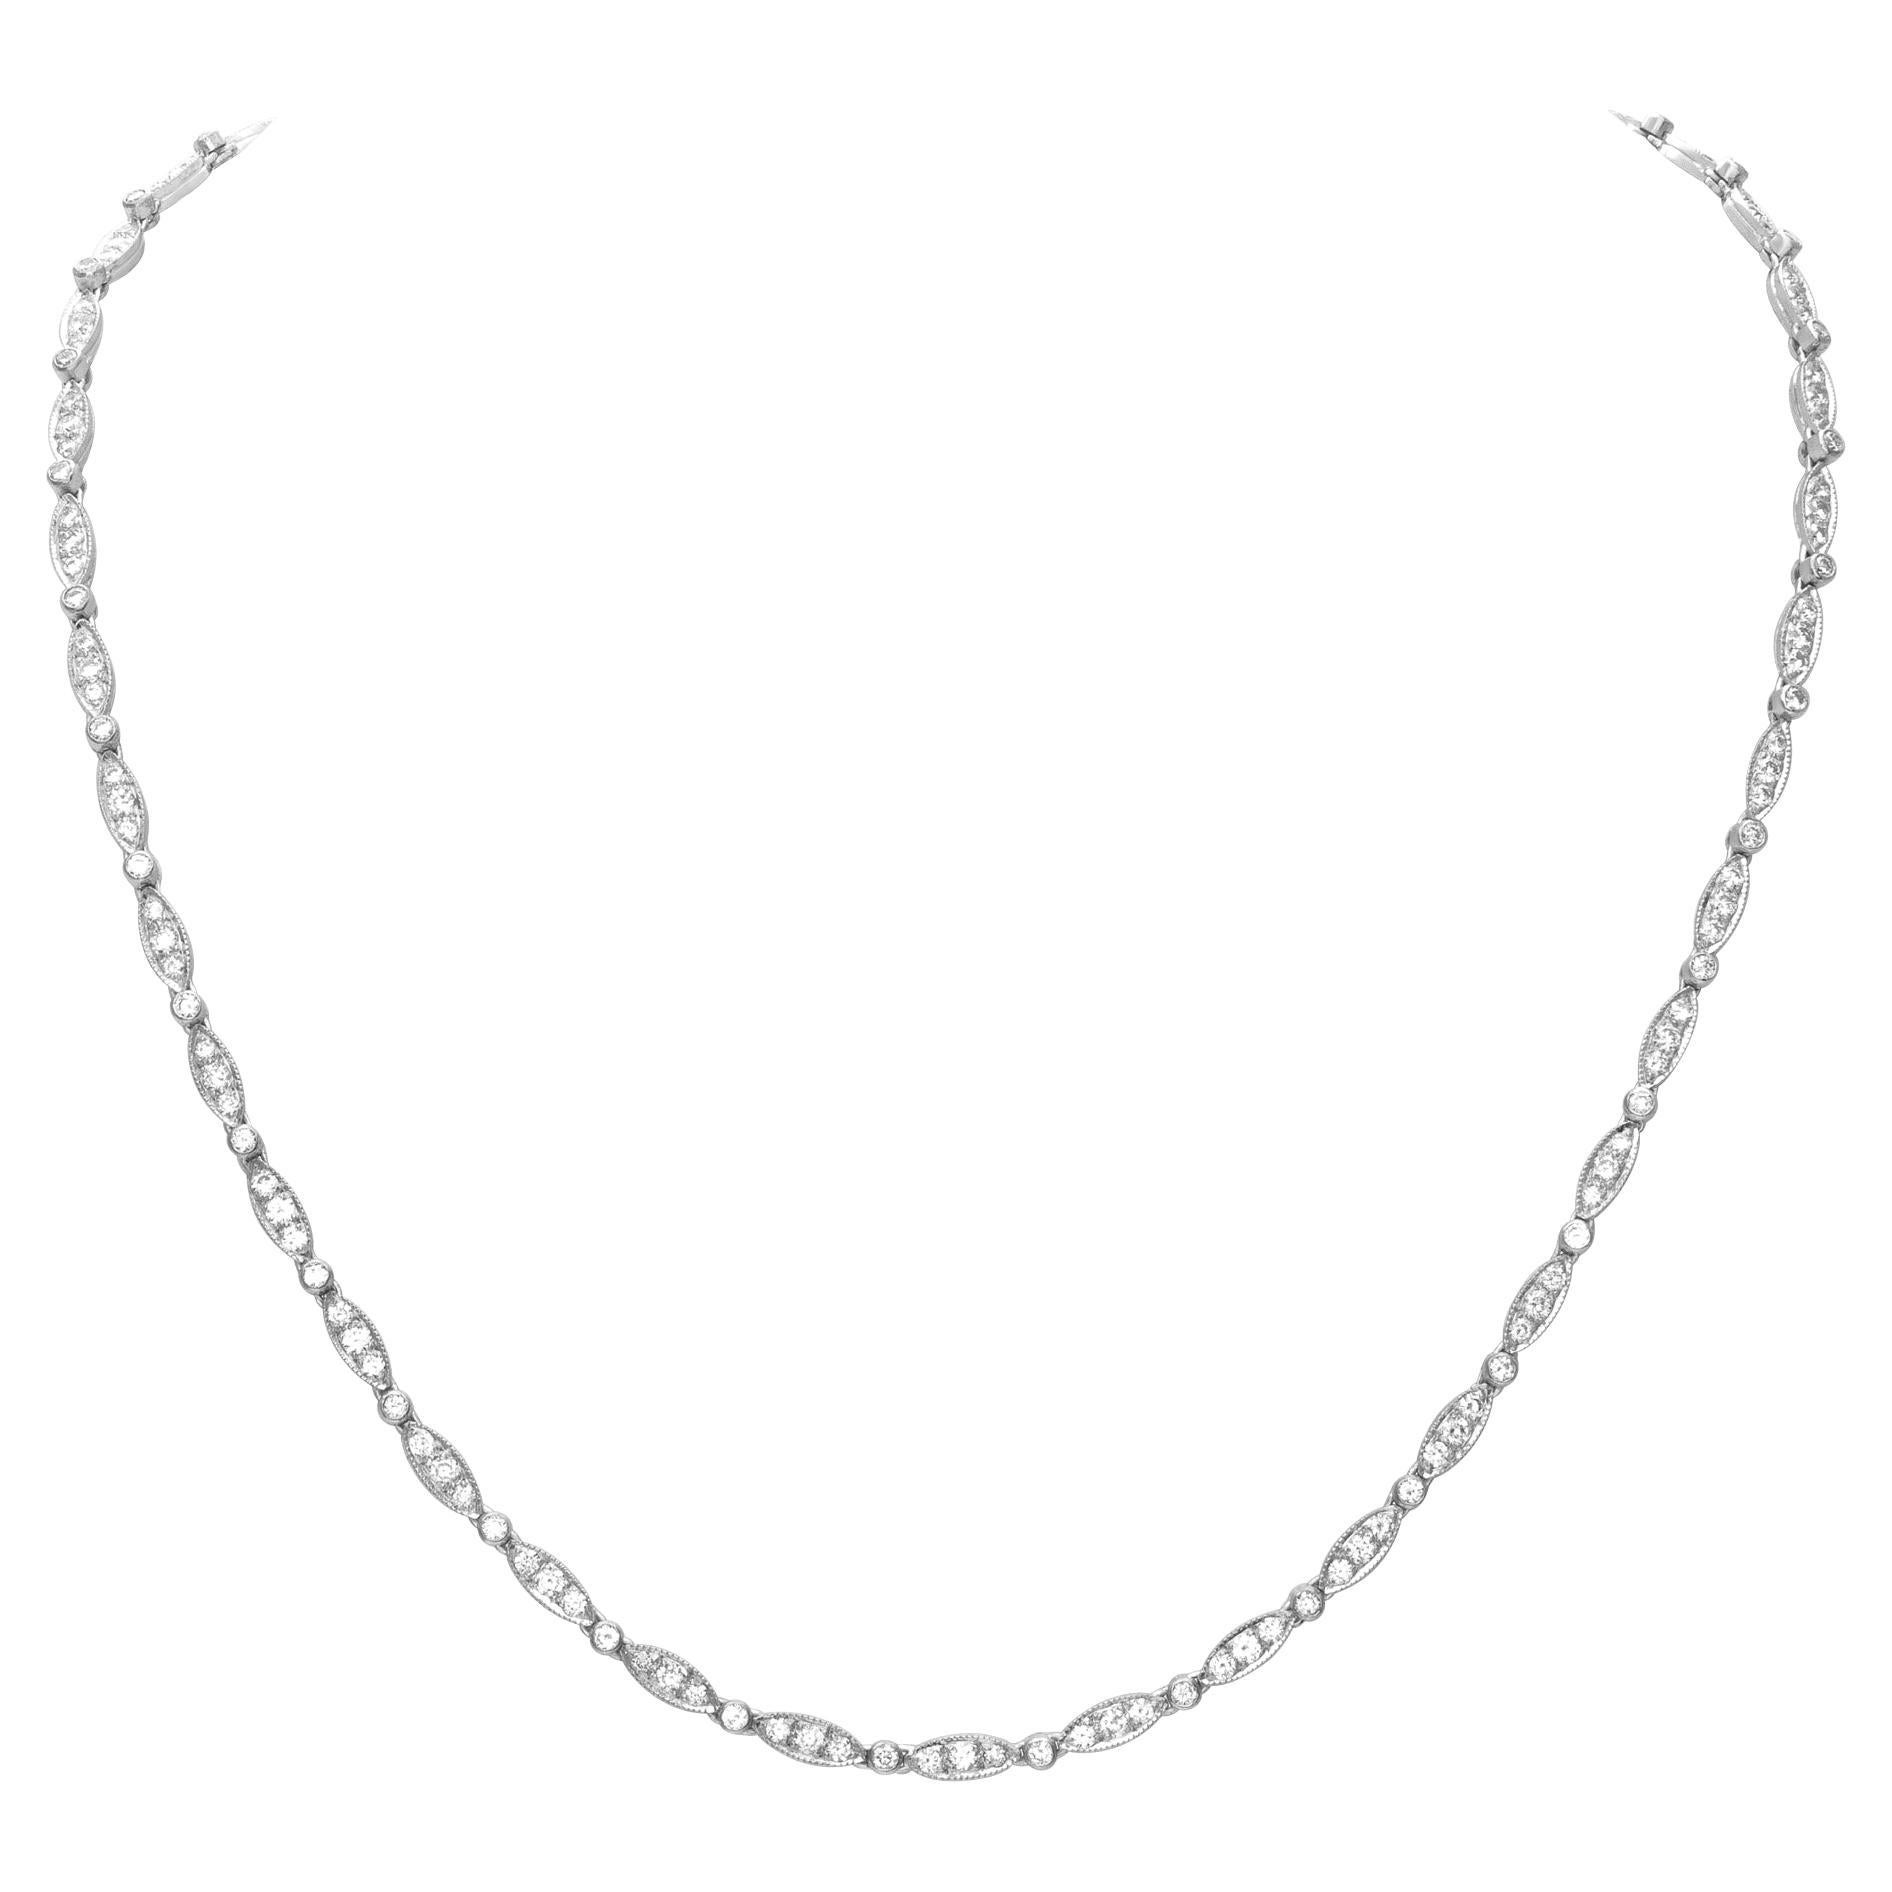 Elegant Diamond Necklace in 18k White Gold